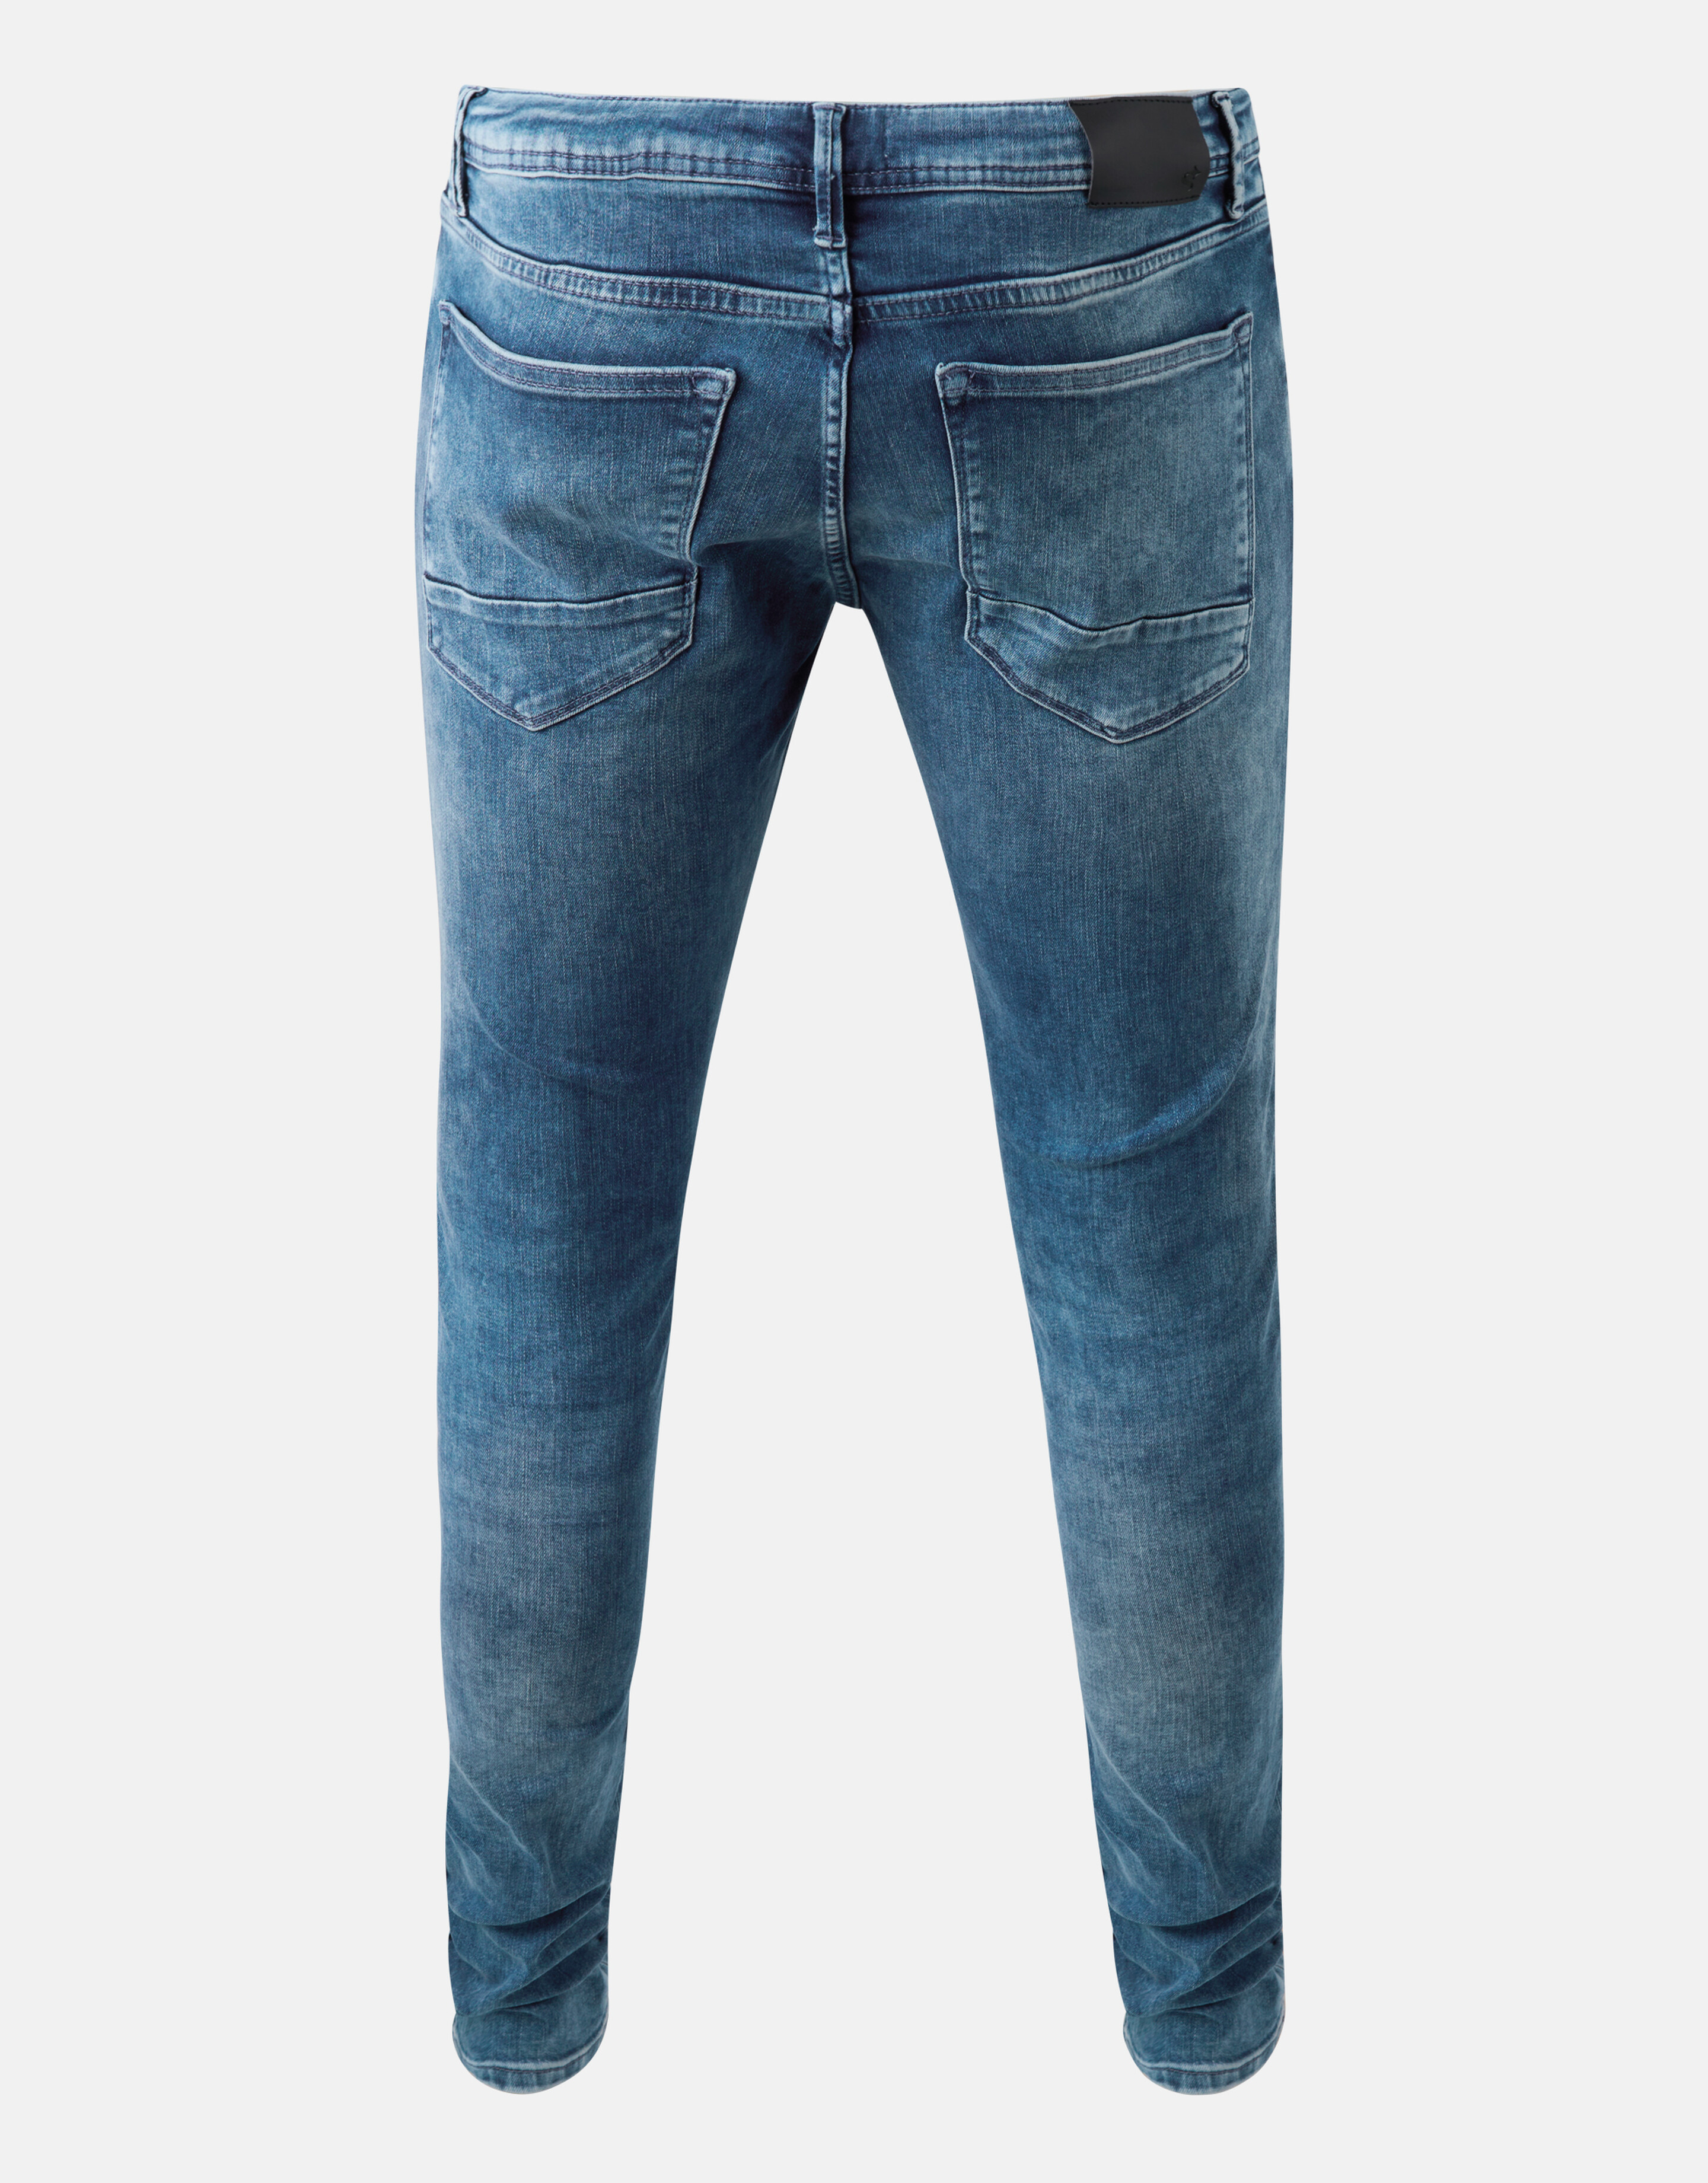 Skinny Fit Jeans Mediumstone L34 Refill